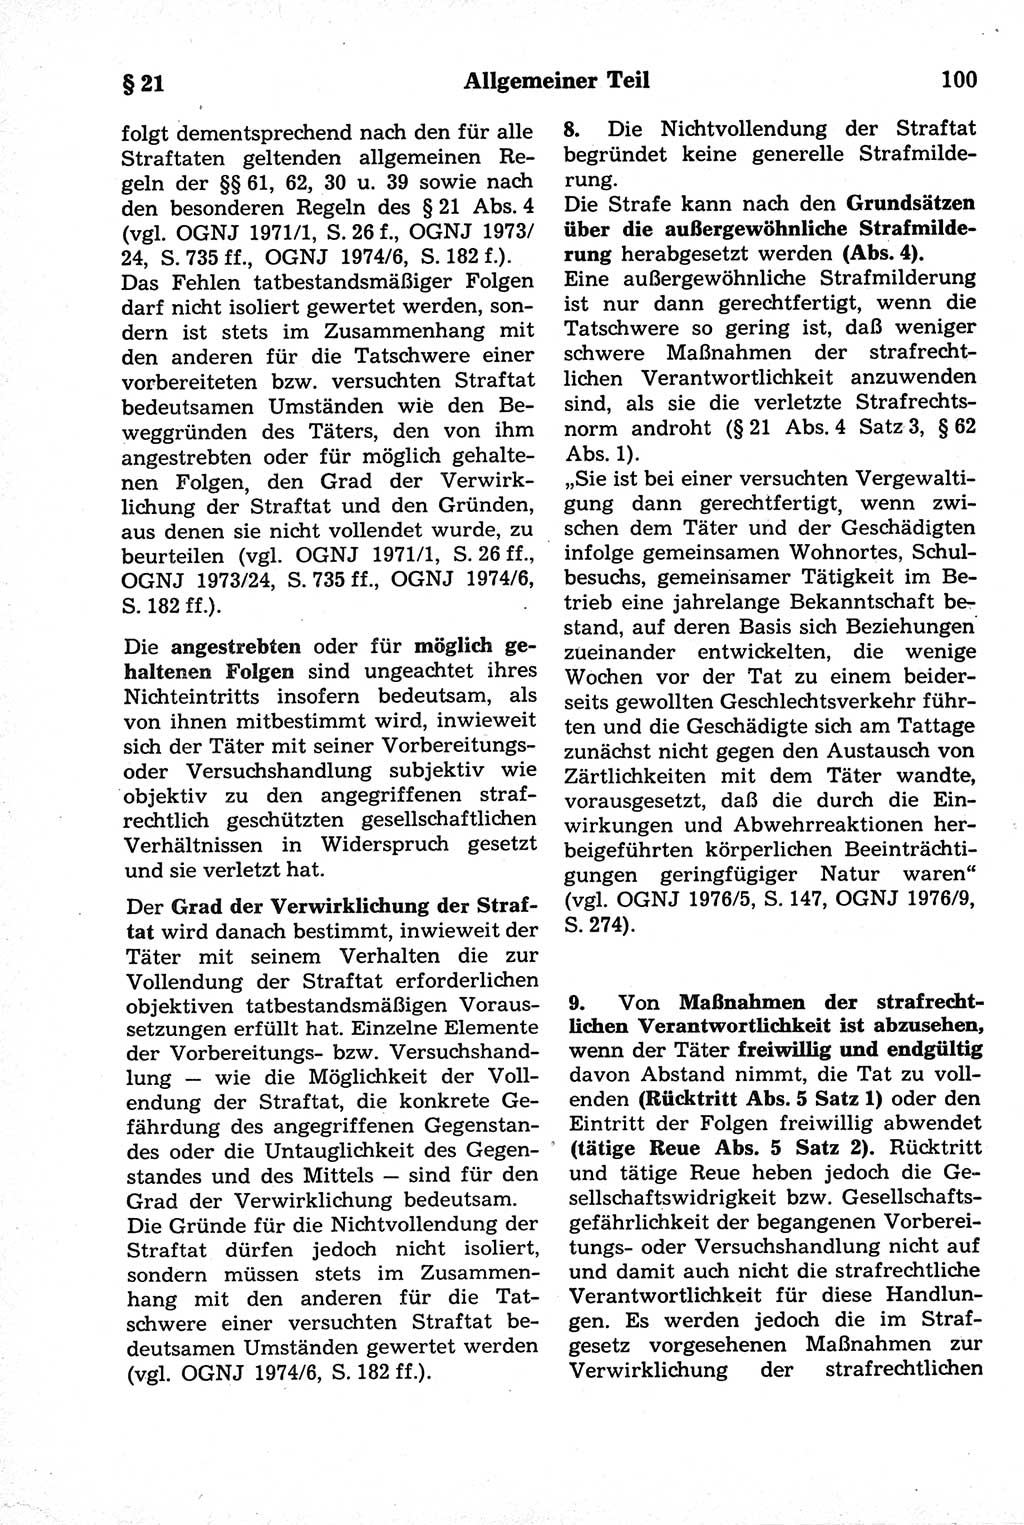 Strafrecht der Deutschen Demokratischen Republik (DDR), Kommentar zum Strafgesetzbuch (StGB) 1981, Seite 100 (Strafr. DDR Komm. StGB 1981, S. 100)